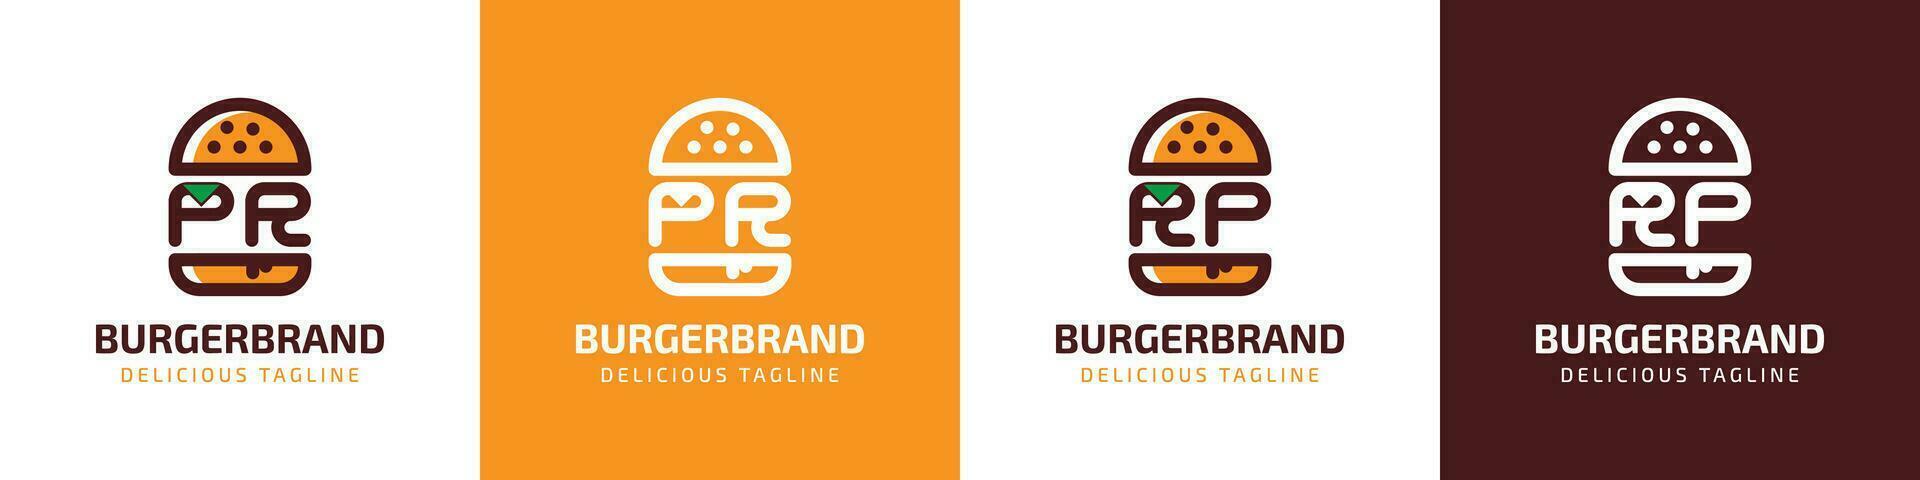 lettre pr et rp Burger logo, adapté pour tout affaires en relation à Burger avec pr ou rp initiales. vecteur